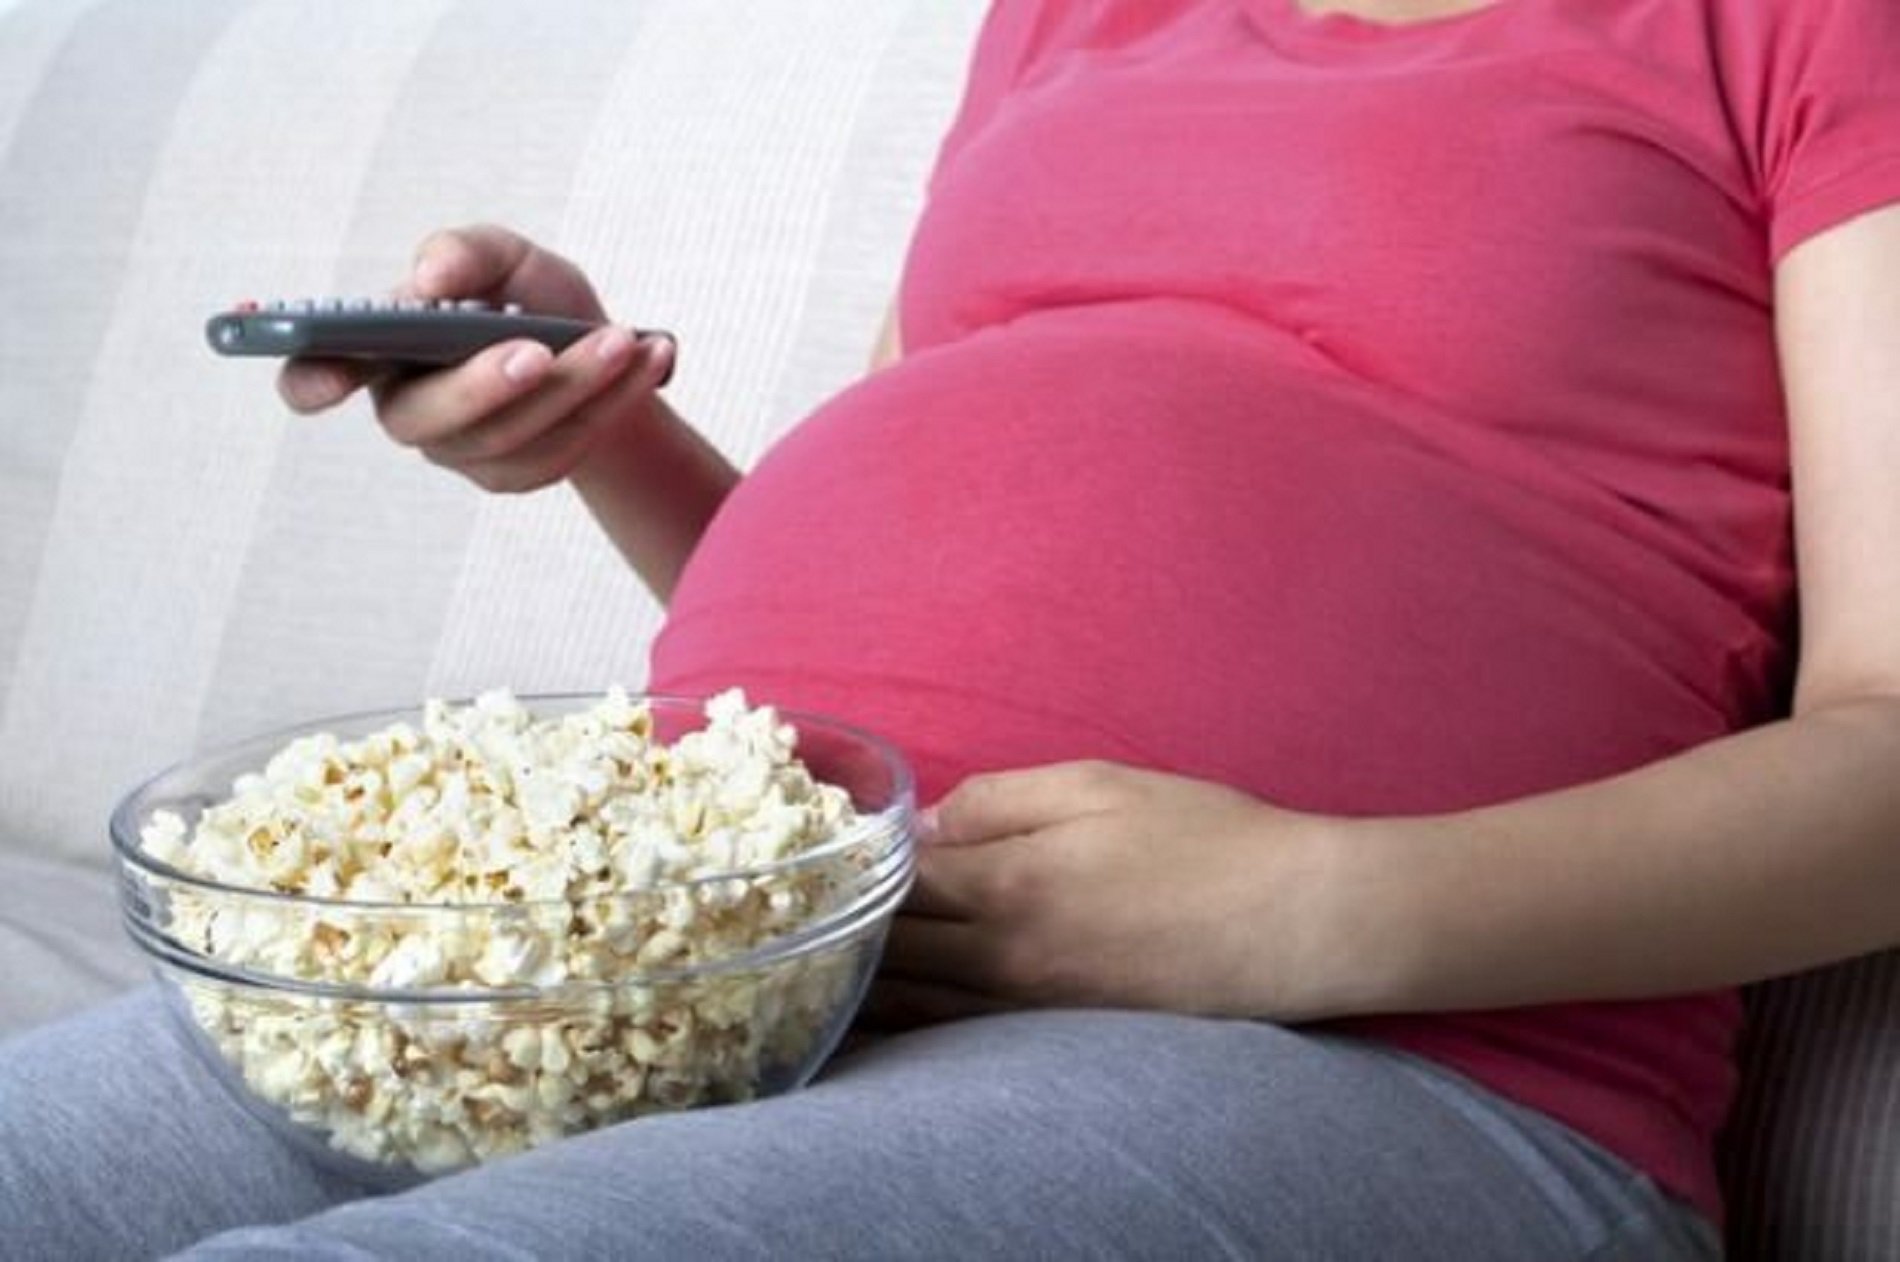 Menjar aliments ultraprocessats durant l’embaràs afecta les habilitats lingüístiques de l’infant